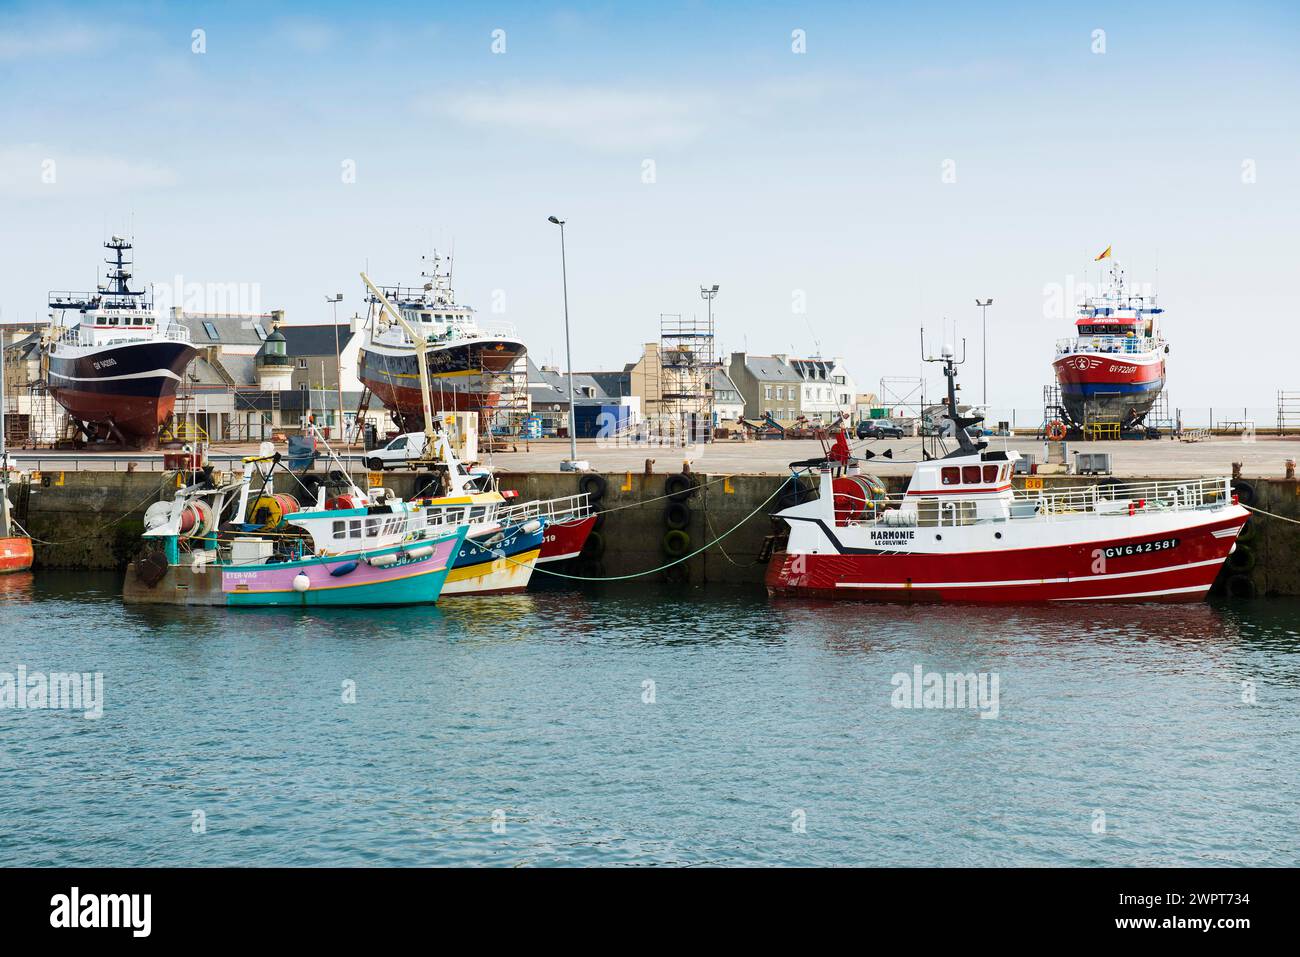 Bateaux de pêche colorés dans le port, Guilvinec, Finistère, Bretagne, France Banque D'Images